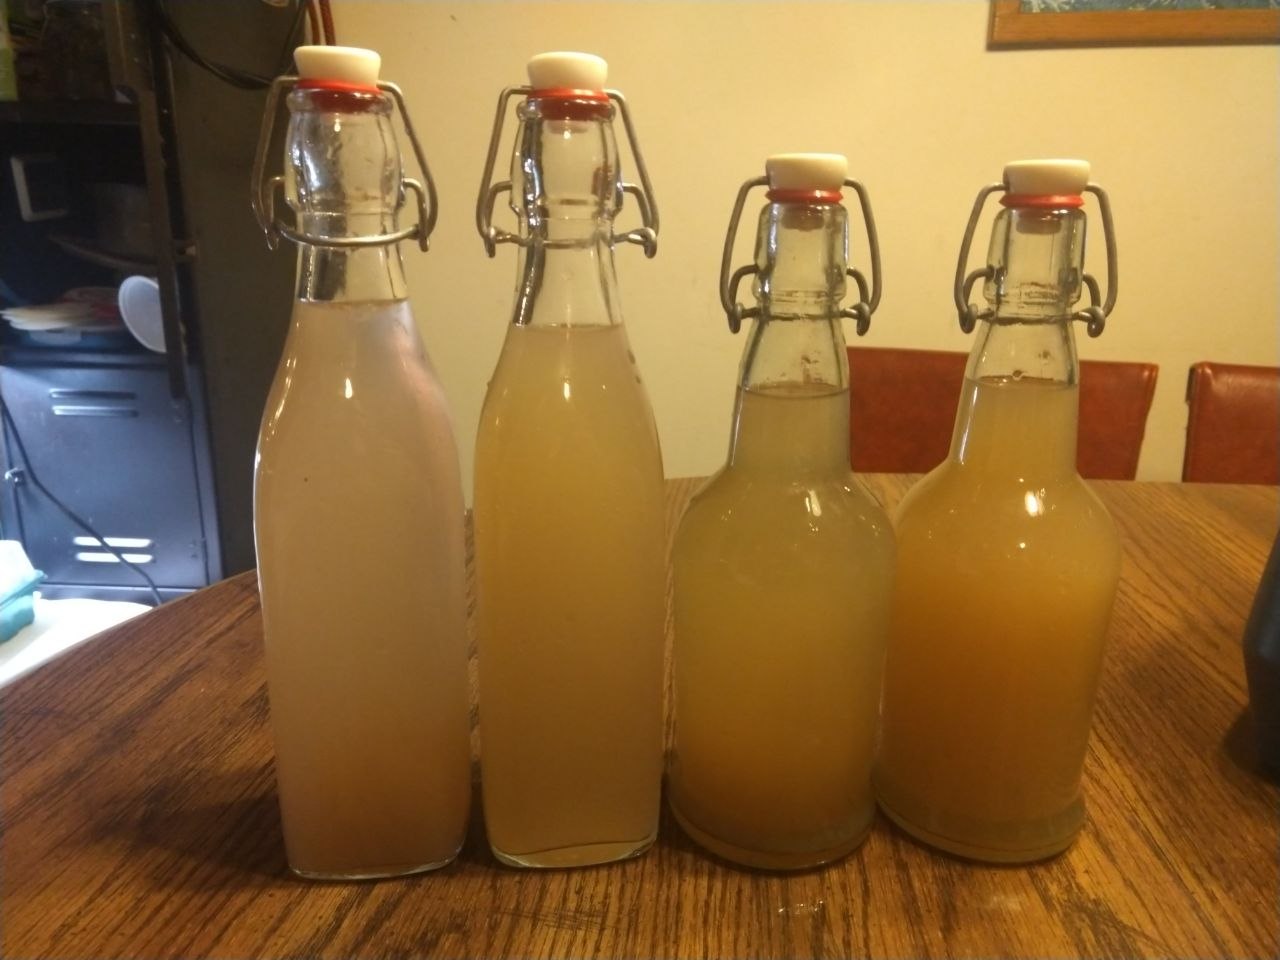 Ginger beer in flip top bottles.